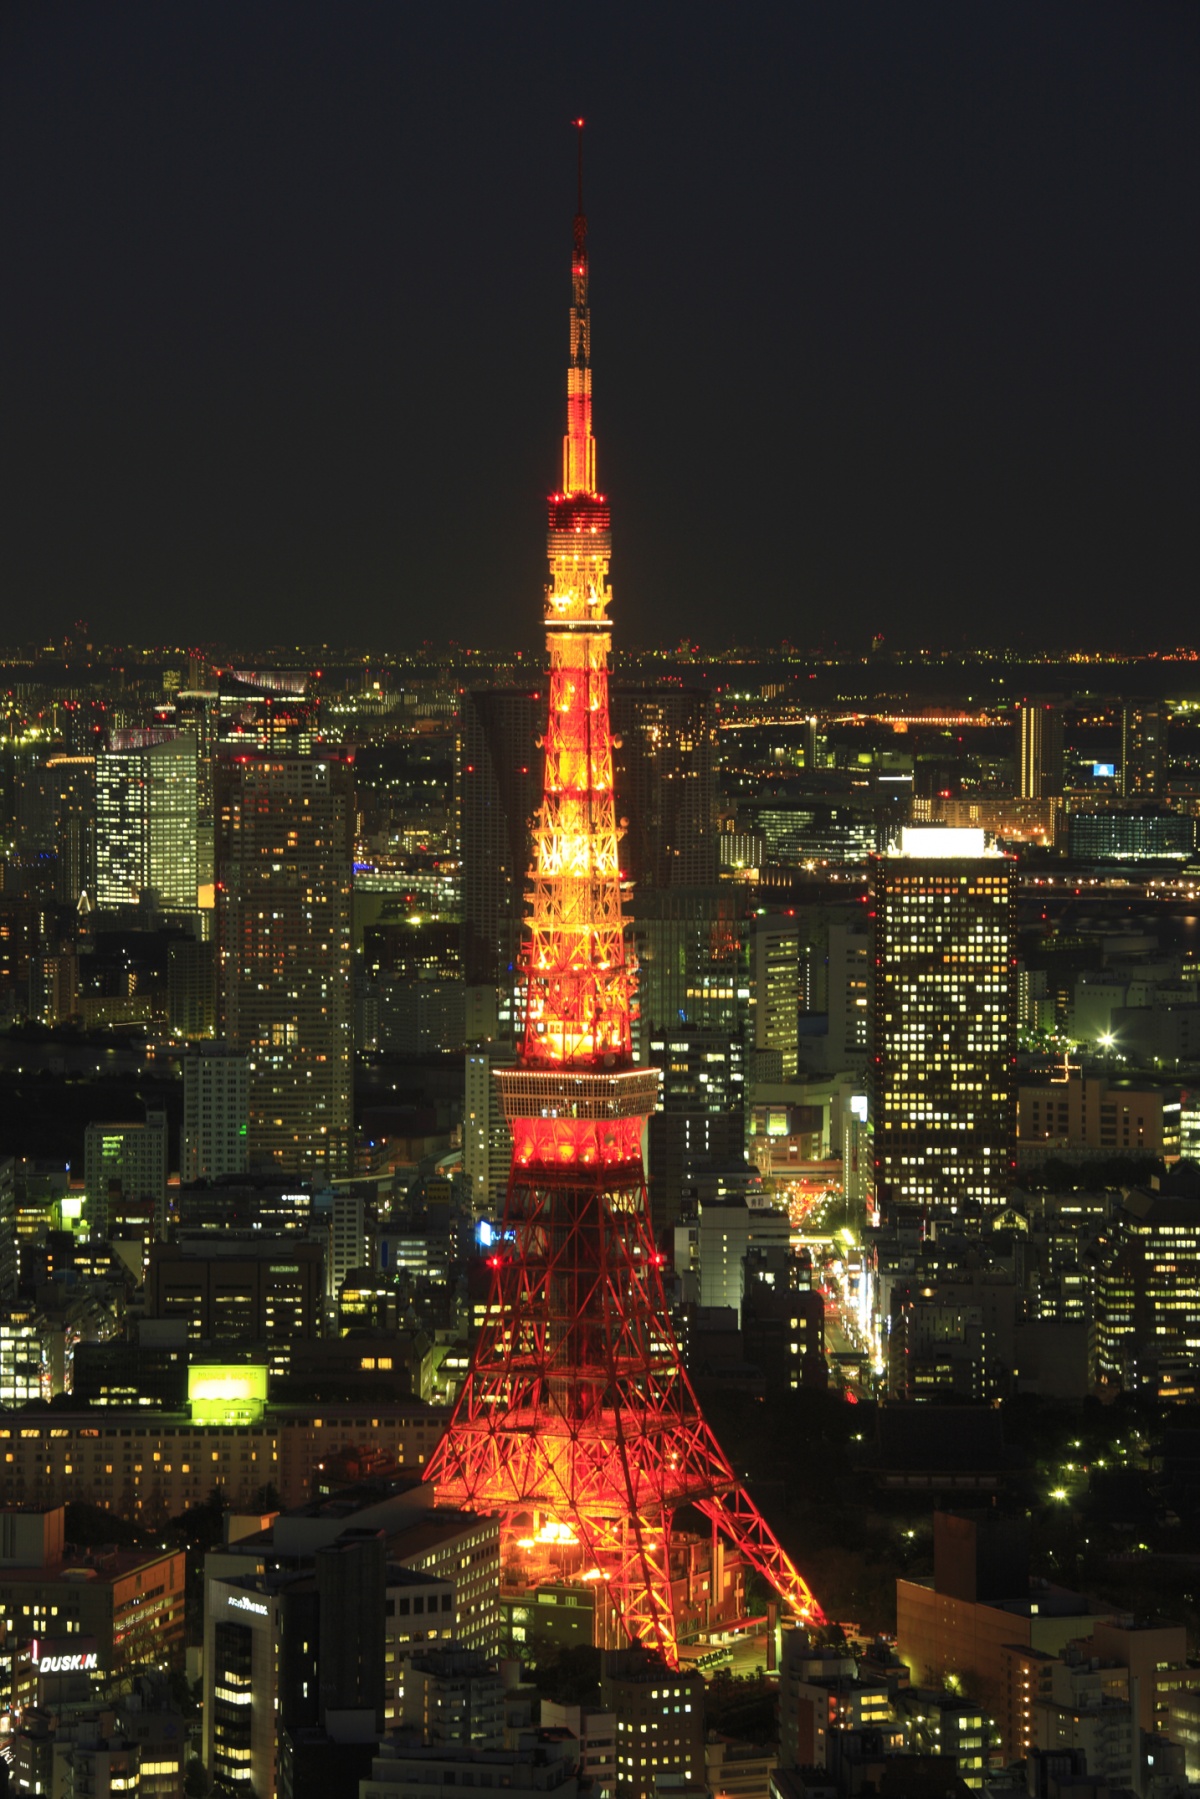 9. Tokyo Tower (Tokyo)